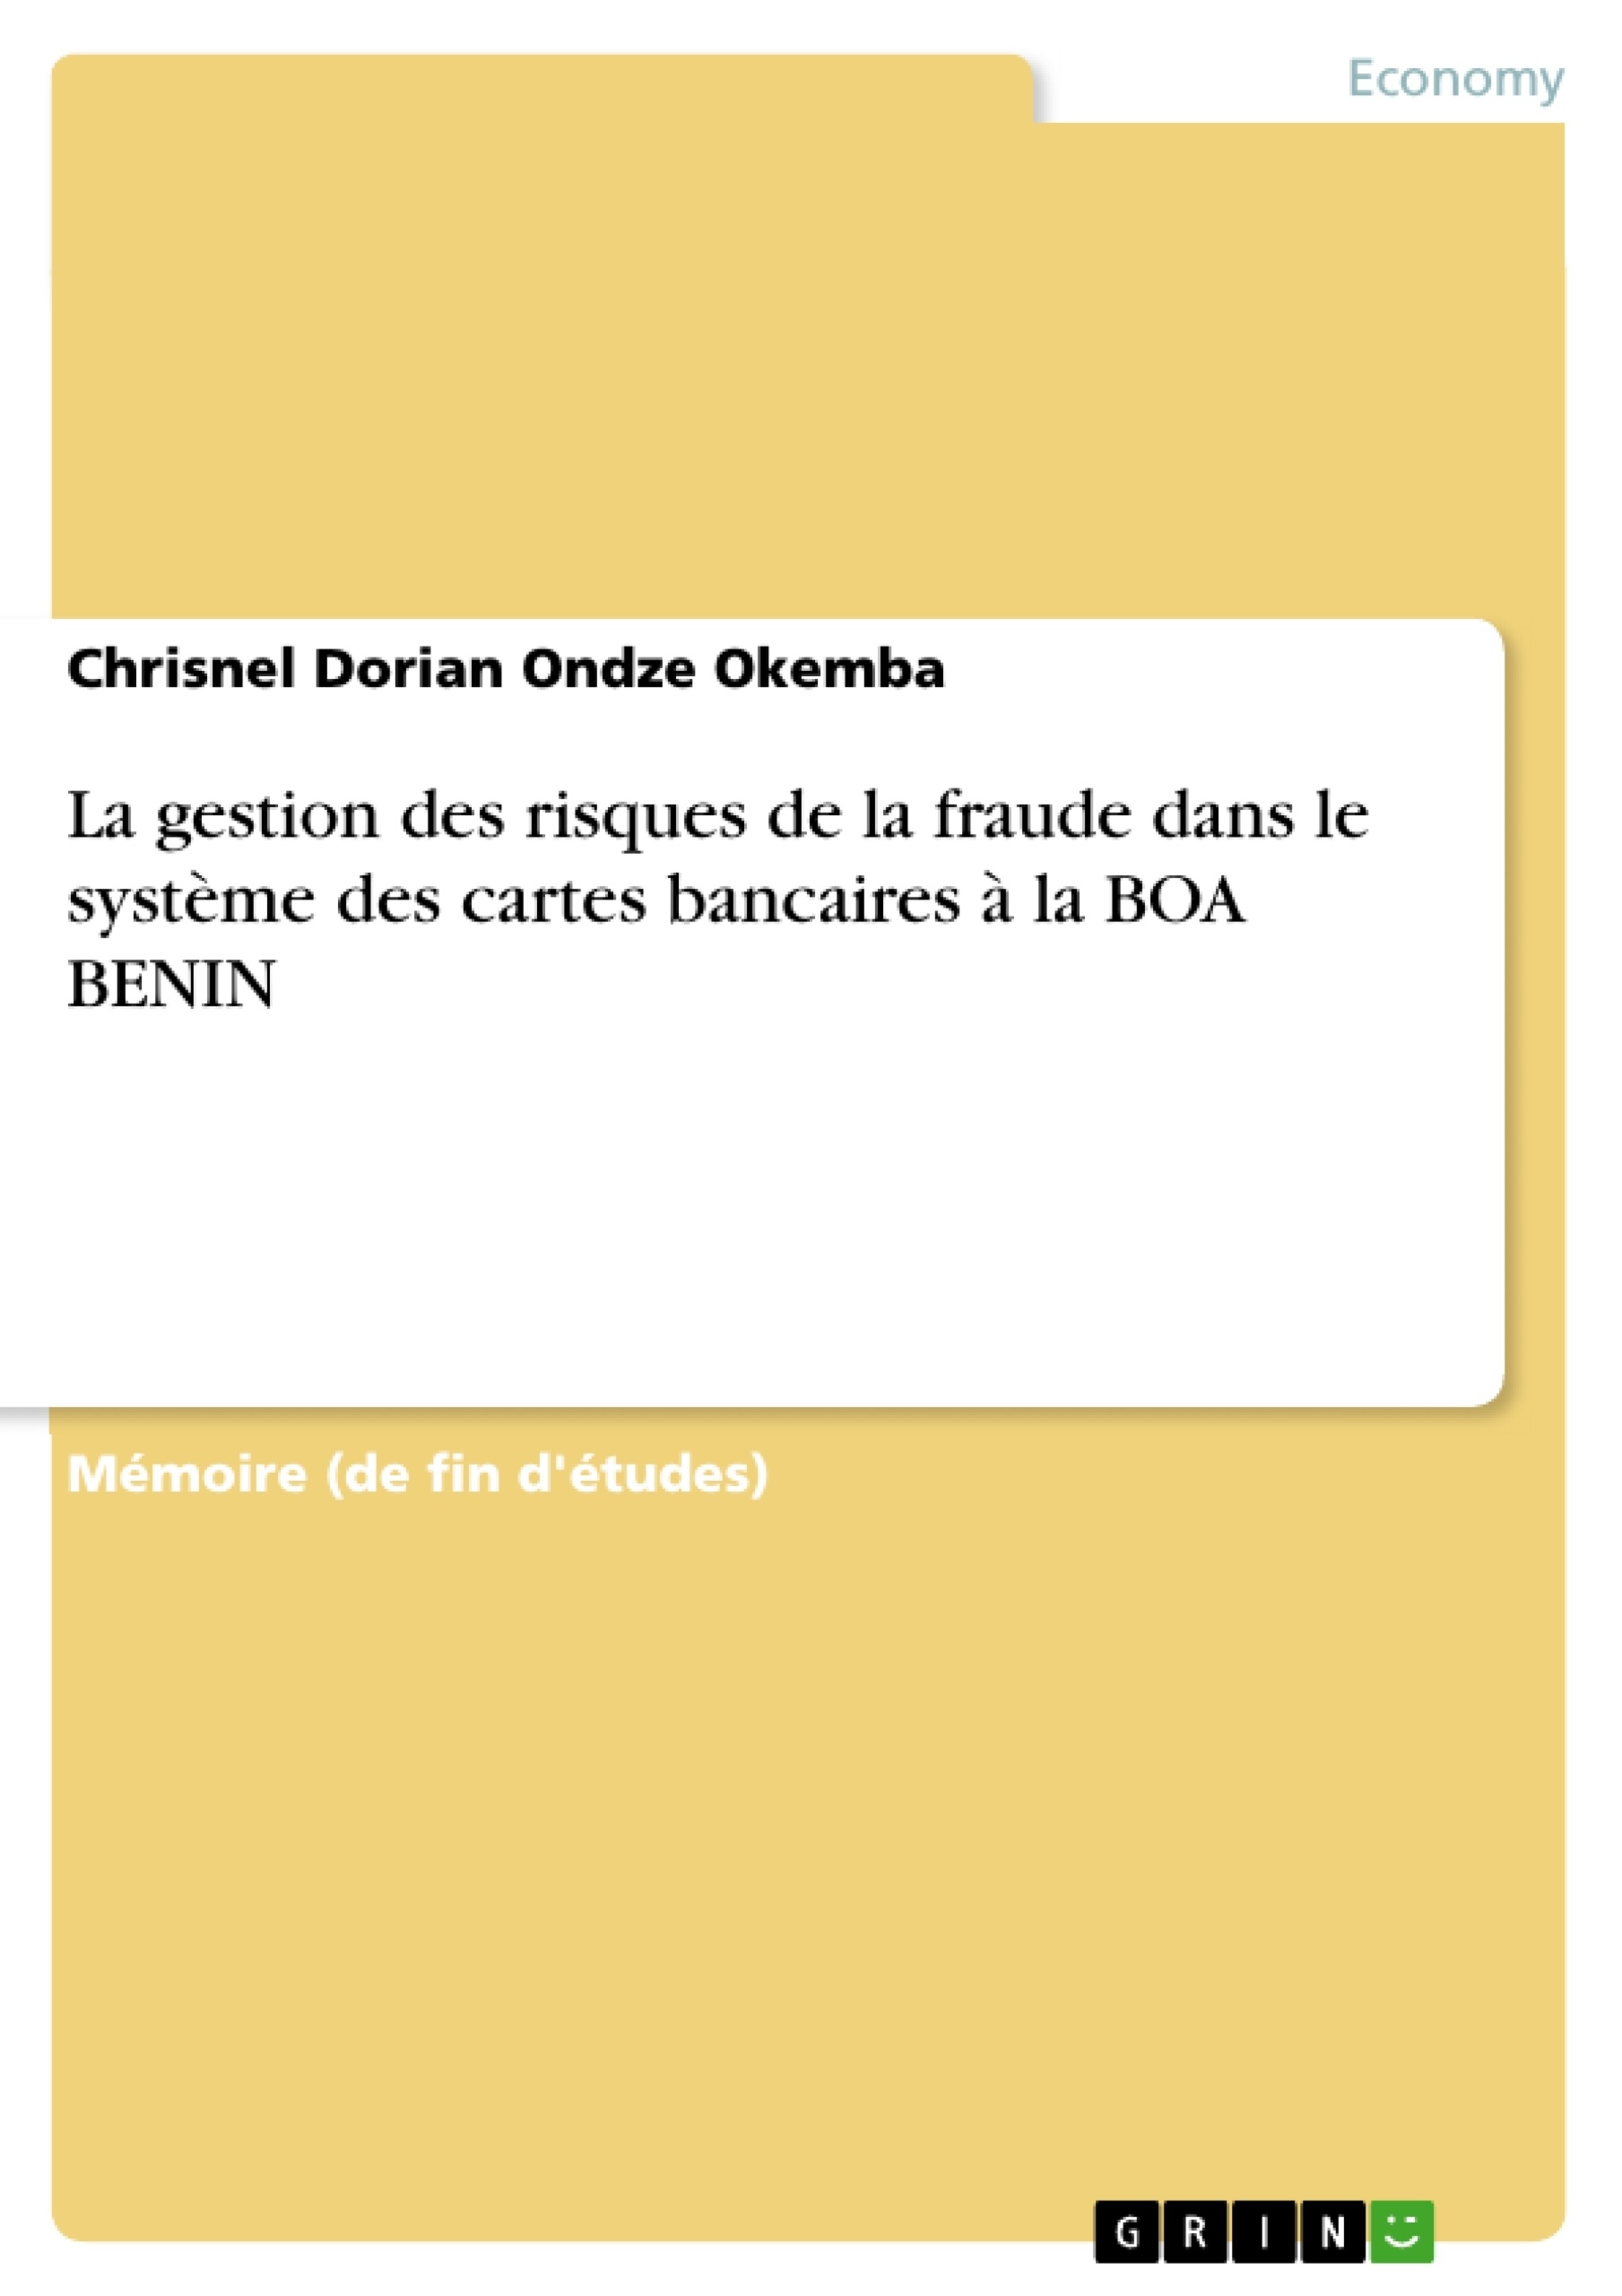 Título: La gestion des risques de la fraude dans le système des cartes bancaires à la BOA BENIN